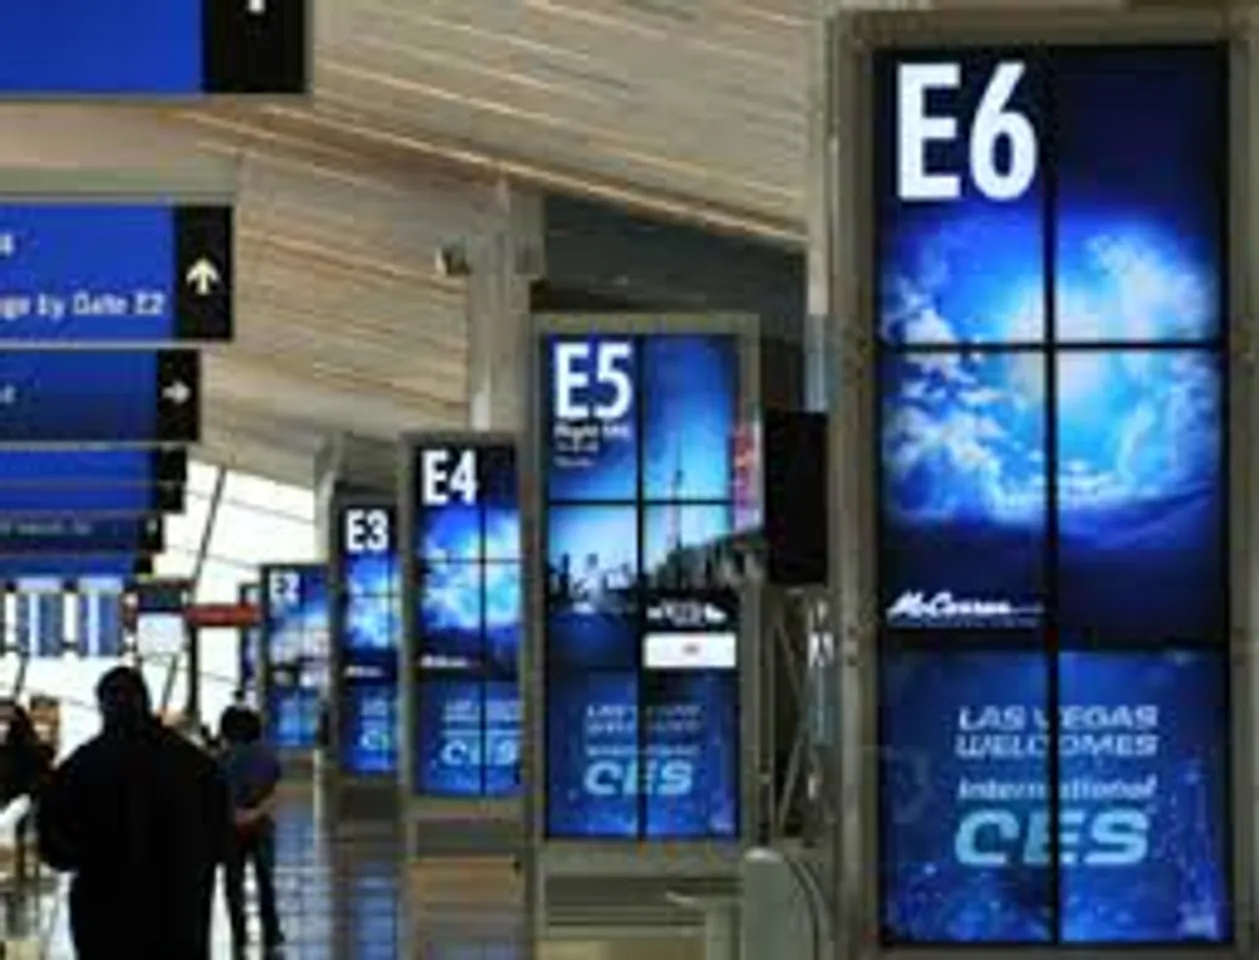 Digital signage at airports